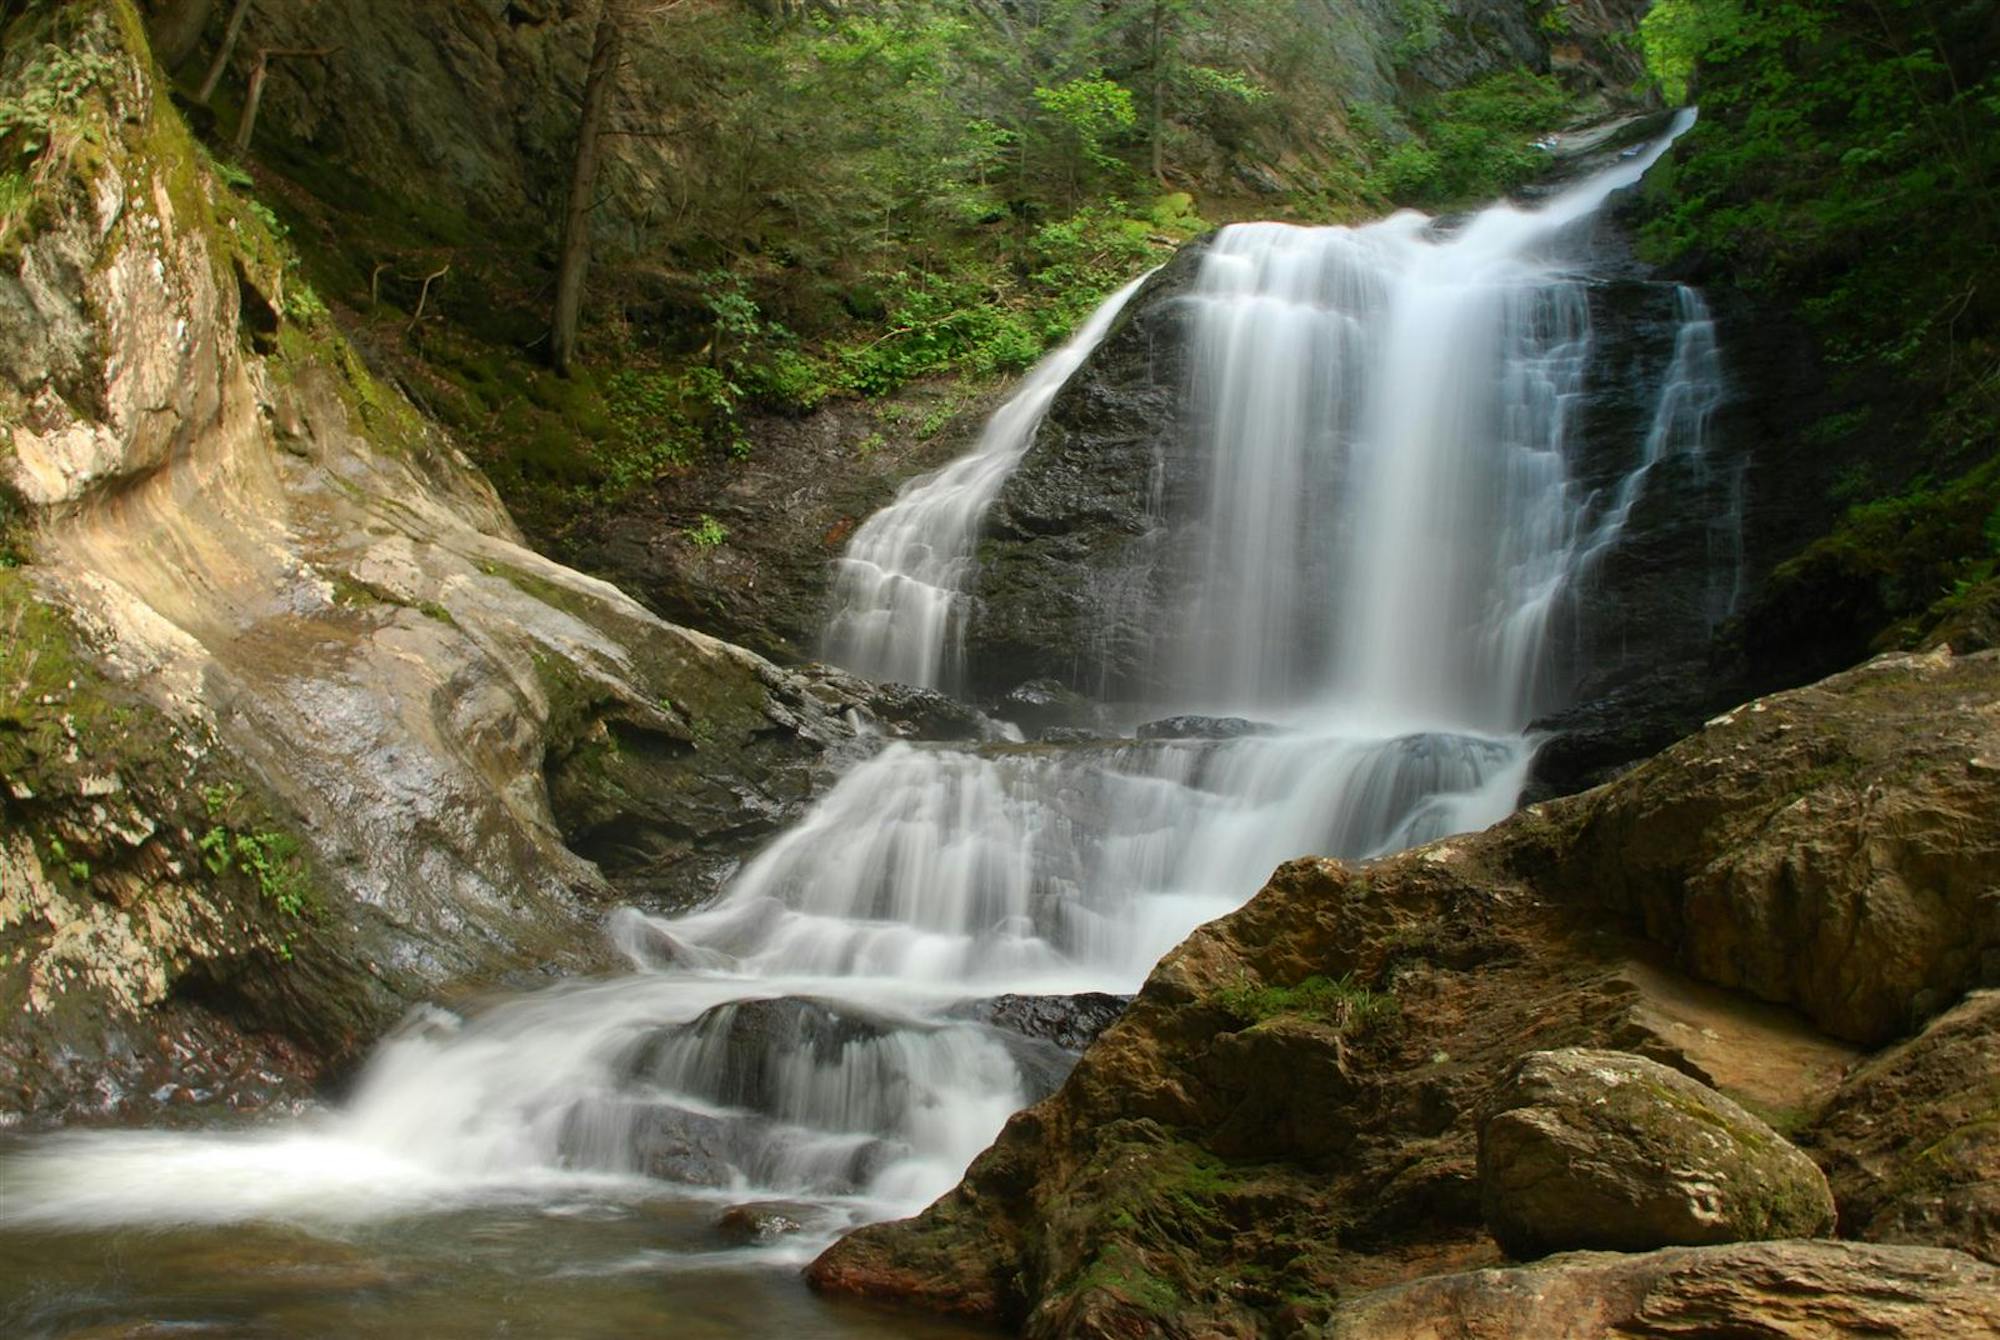 Moss Glen Falls near Stowe, Vermont